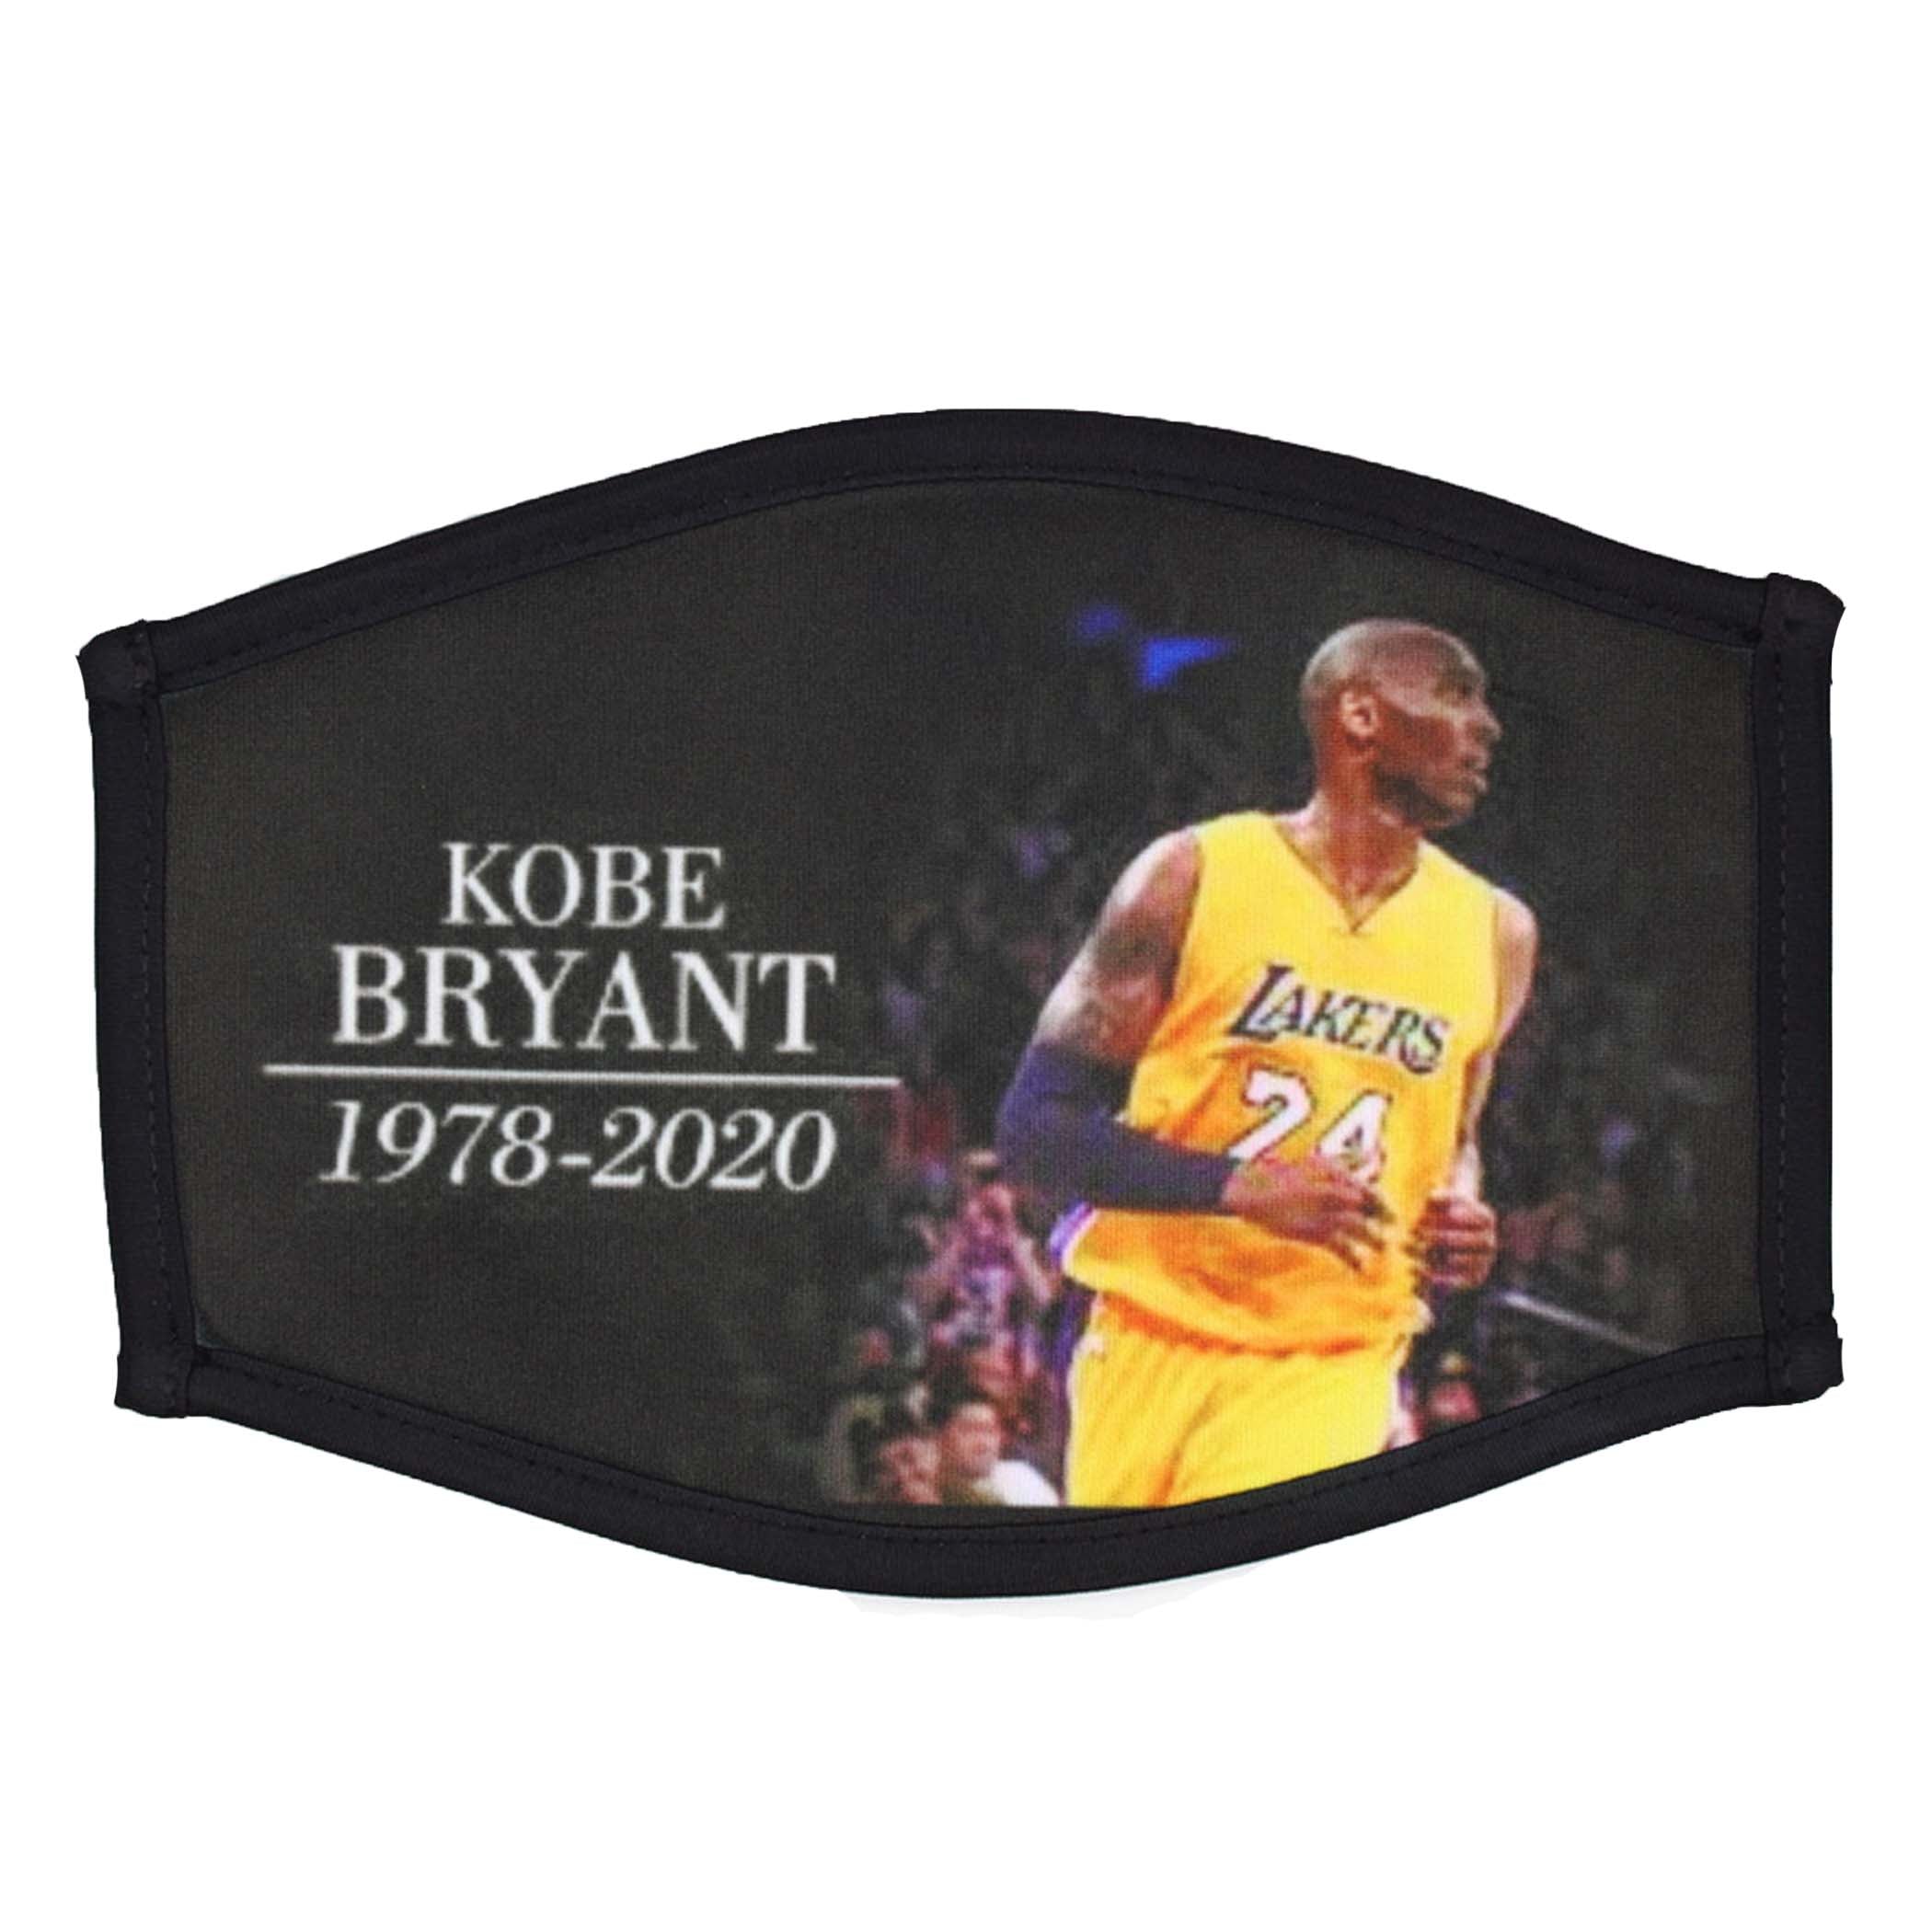 Kobe Bryant, 1978-2020